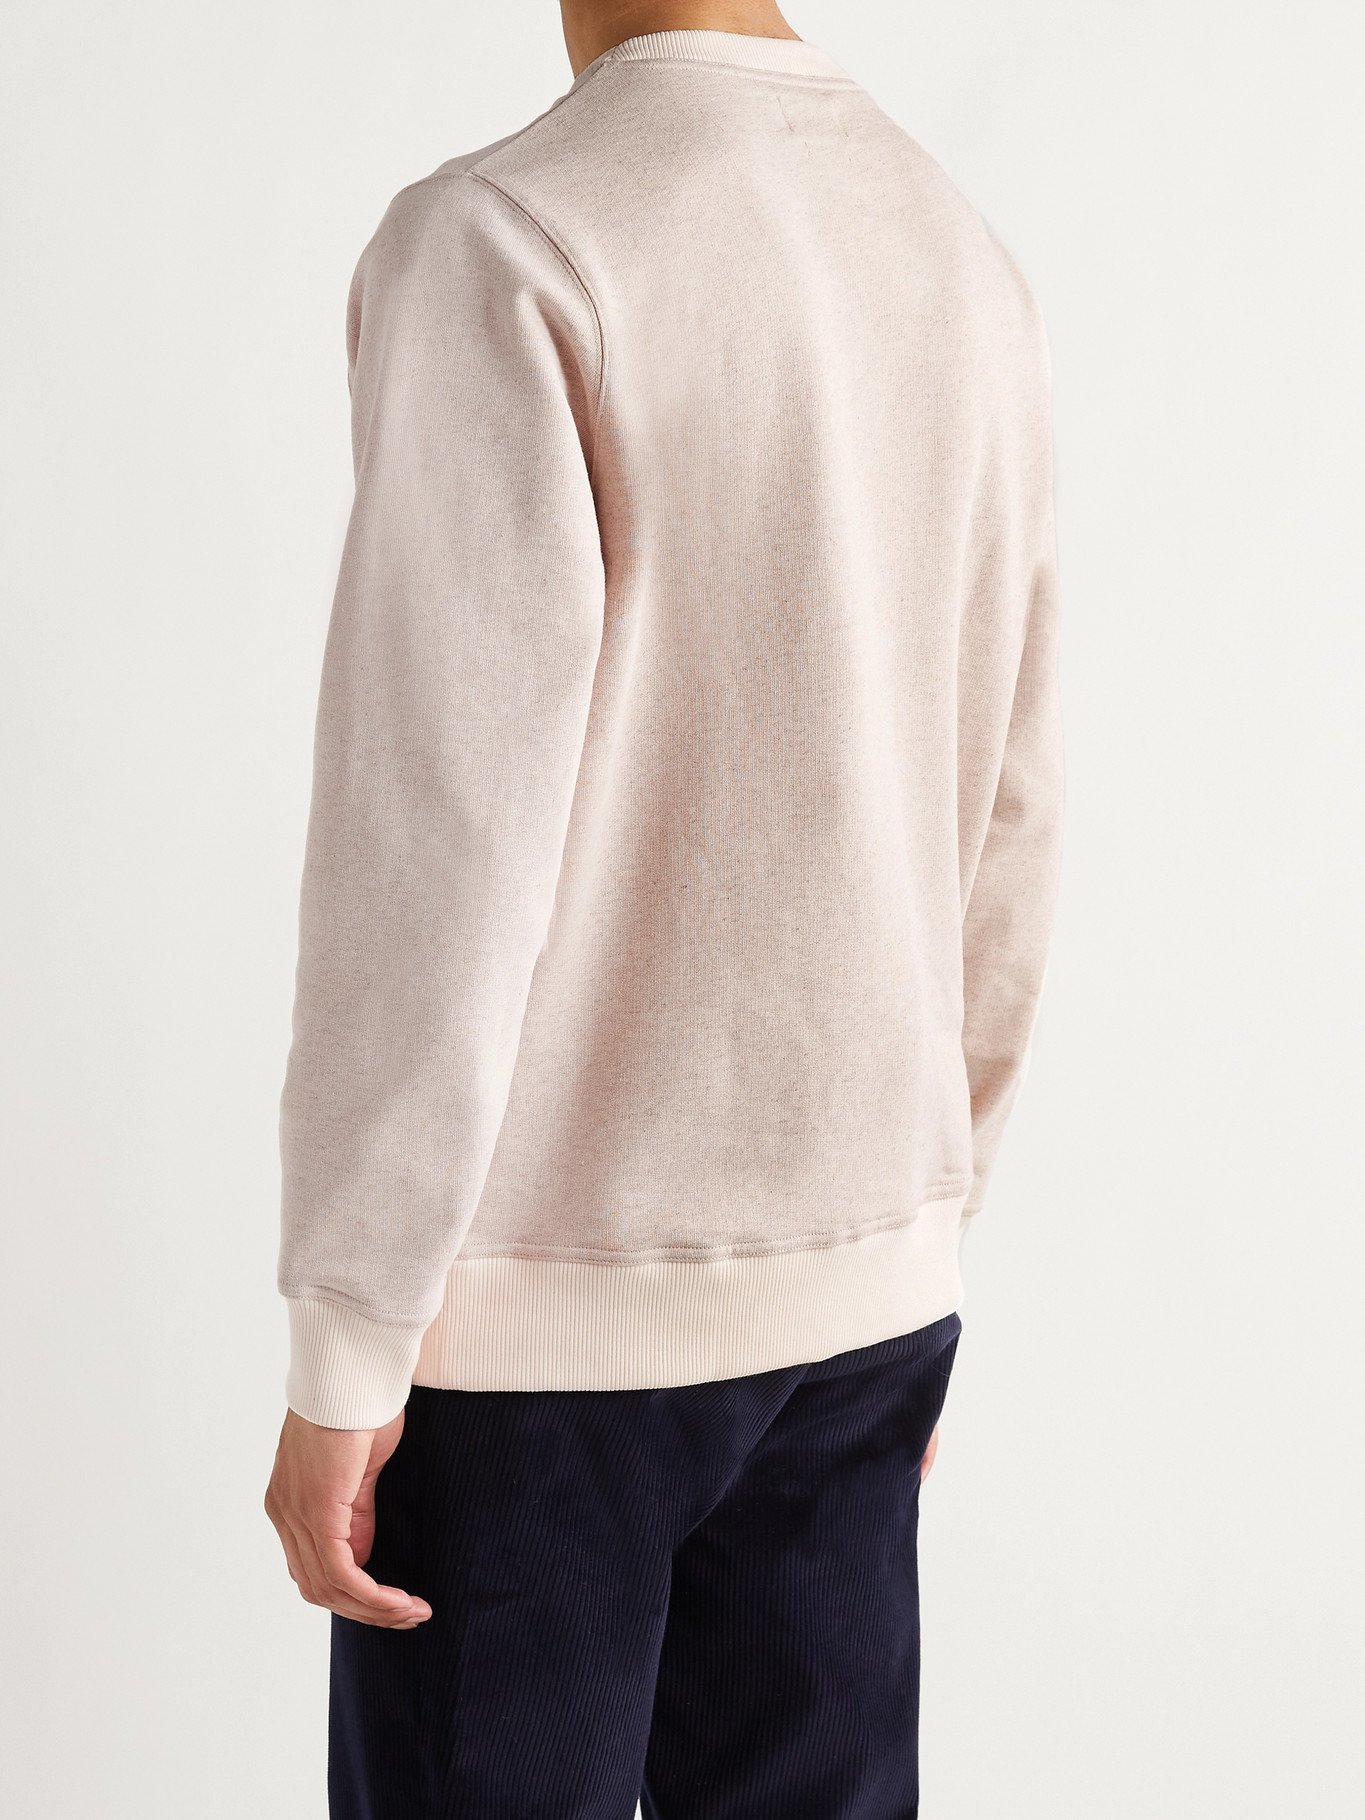 OLIVER SPENCER - Robin Mélange Loopback Cotton and Linen-Blend Jersey Sweatshirt - Neutrals